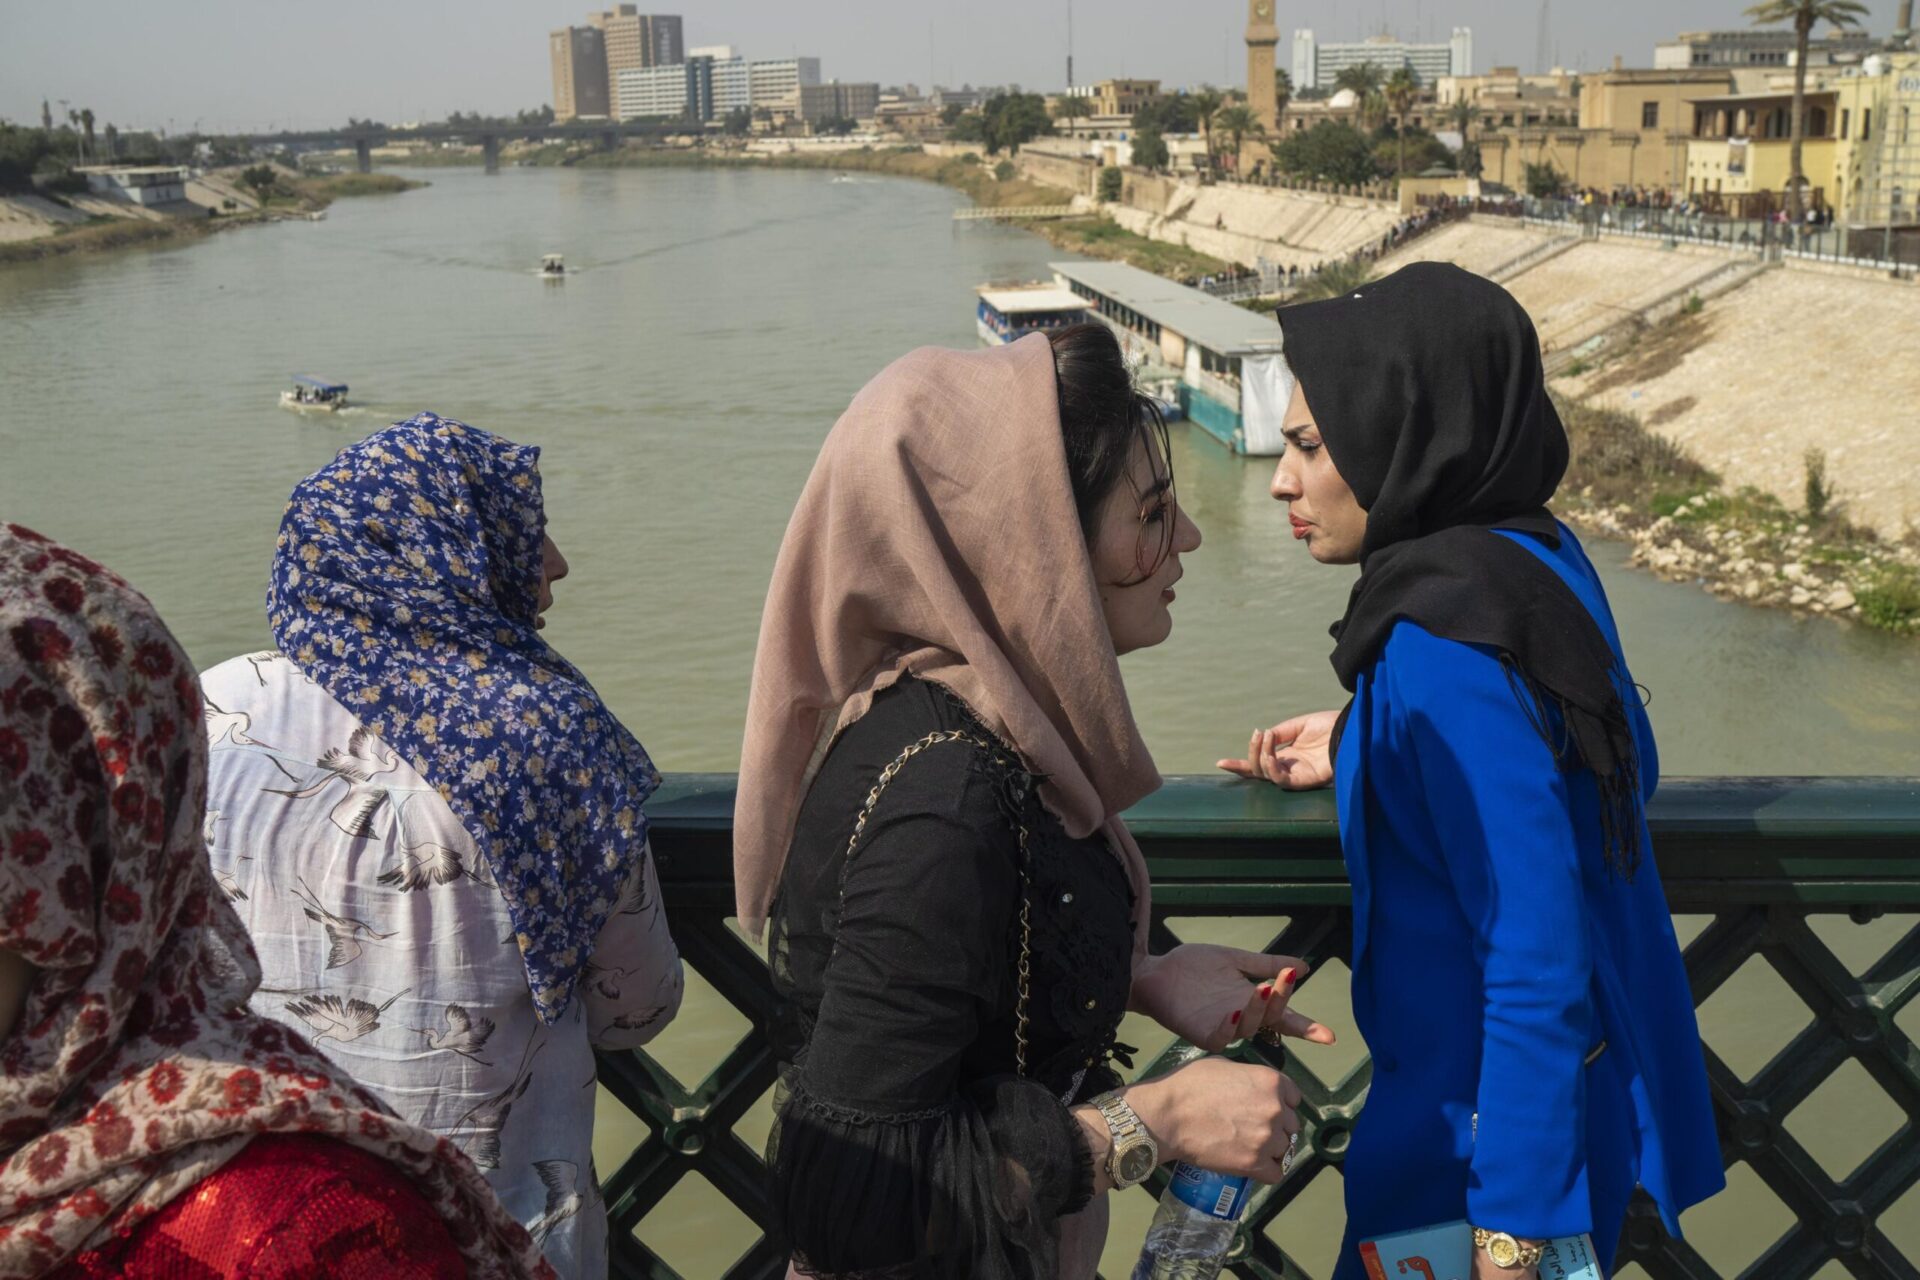 20 años después de la invasión estadounidense, los jóvenes iraquíes ven señales de esperanza